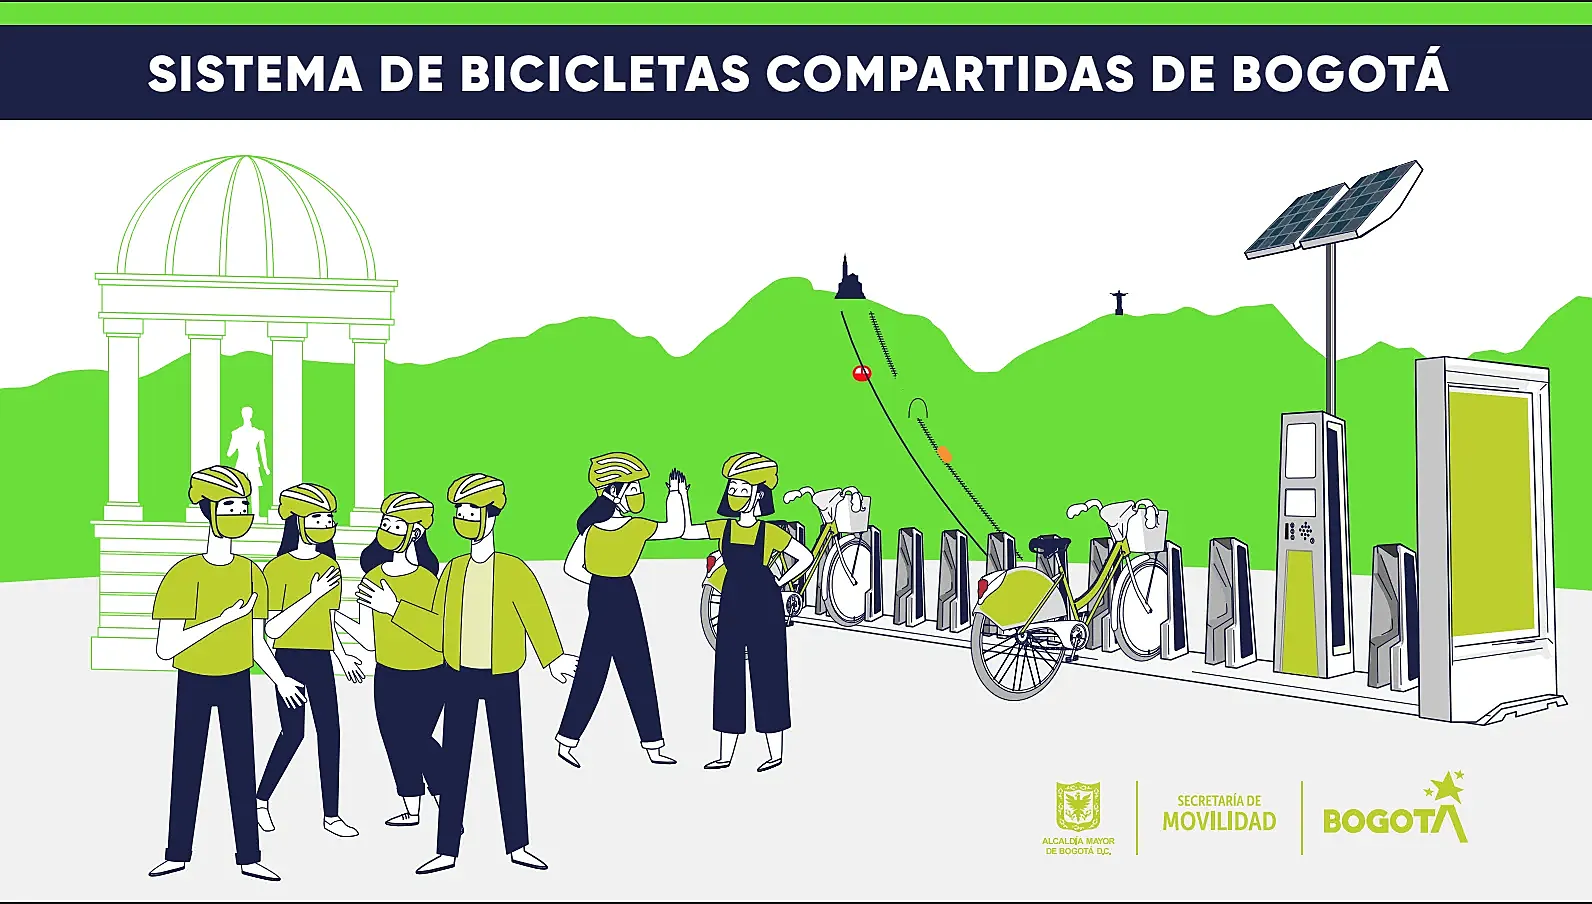 Imagen promocional distribuida por la Secretaría de Movilidad de Bogotá.